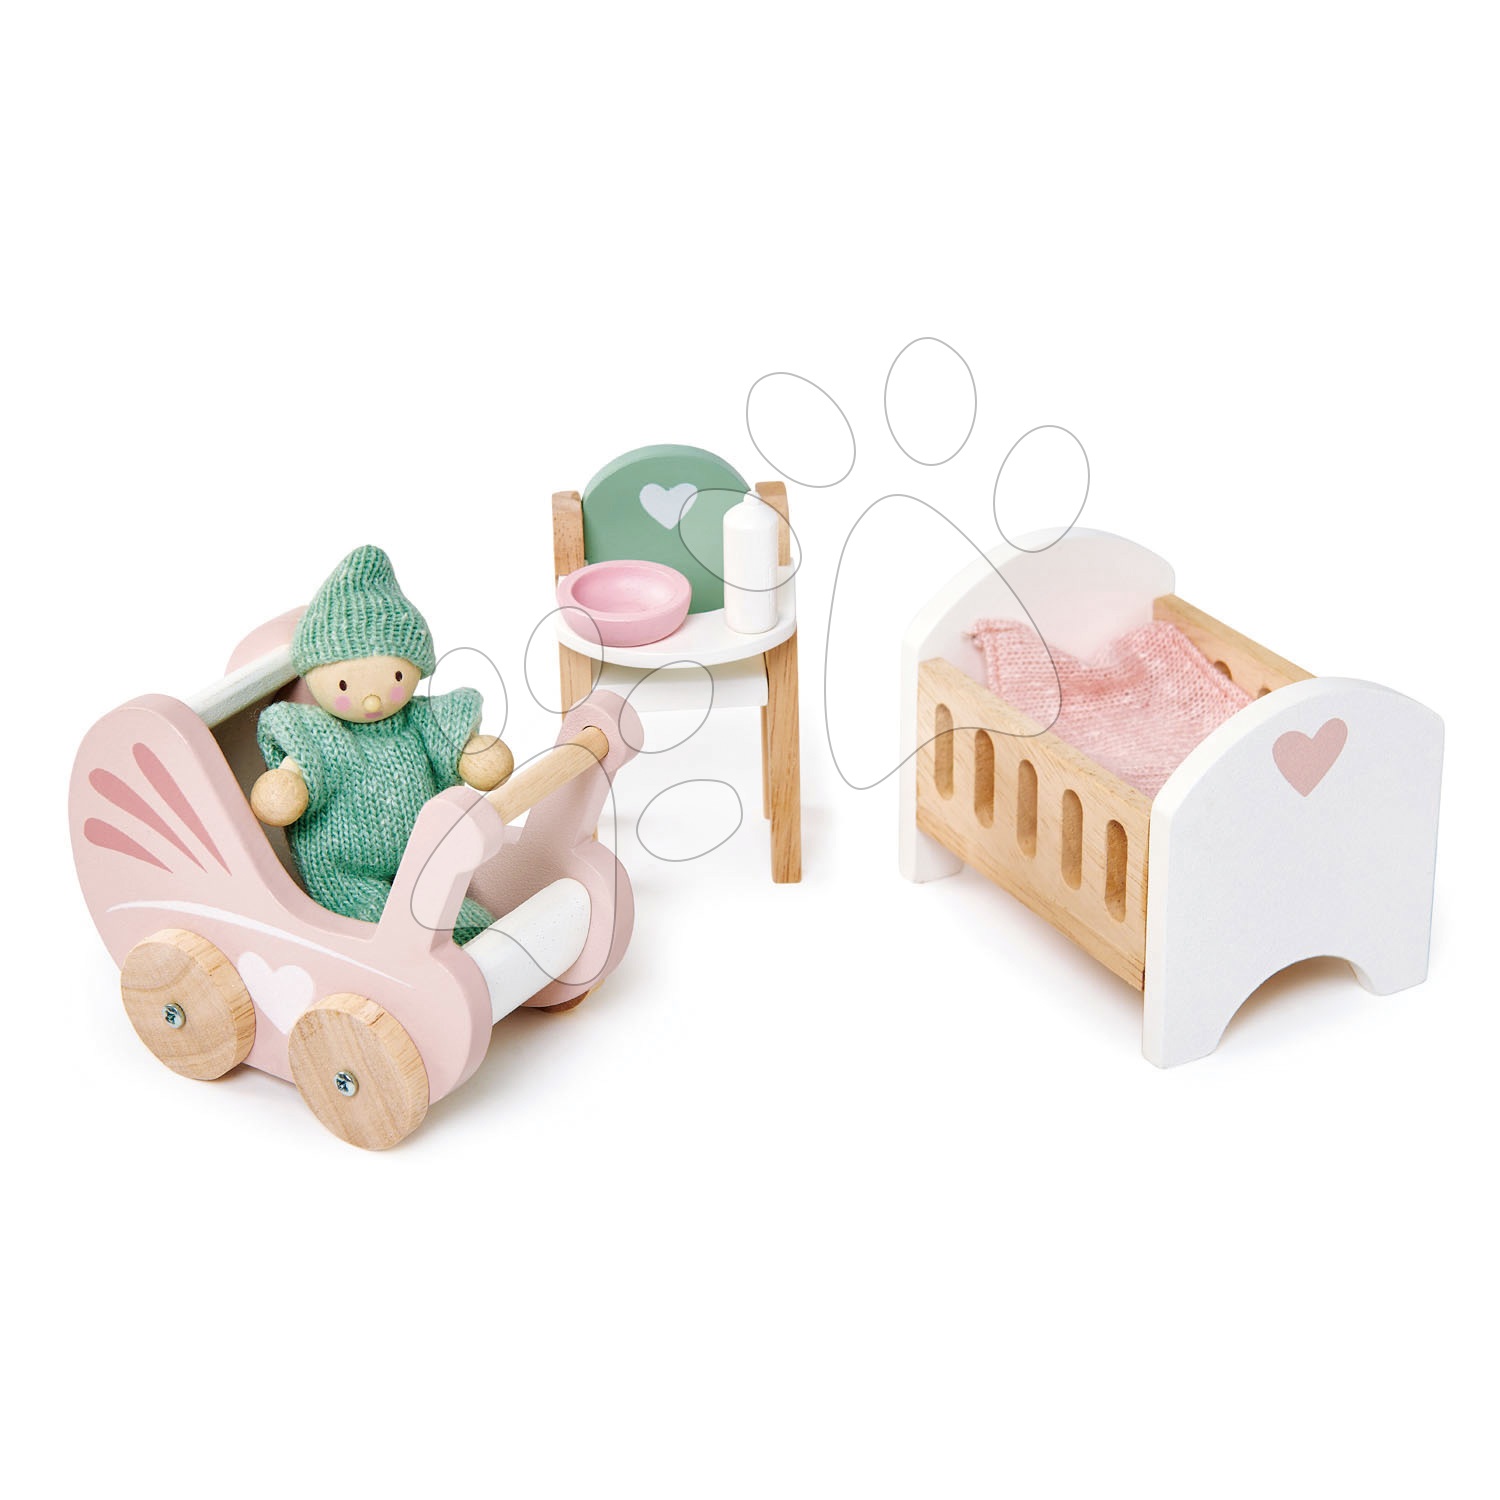 Drevené domčeky pre bábiky - Drevená izba pre bábätko Dovetail Nursery Set Tender Leaf Toys s postavičkou v dupačkách